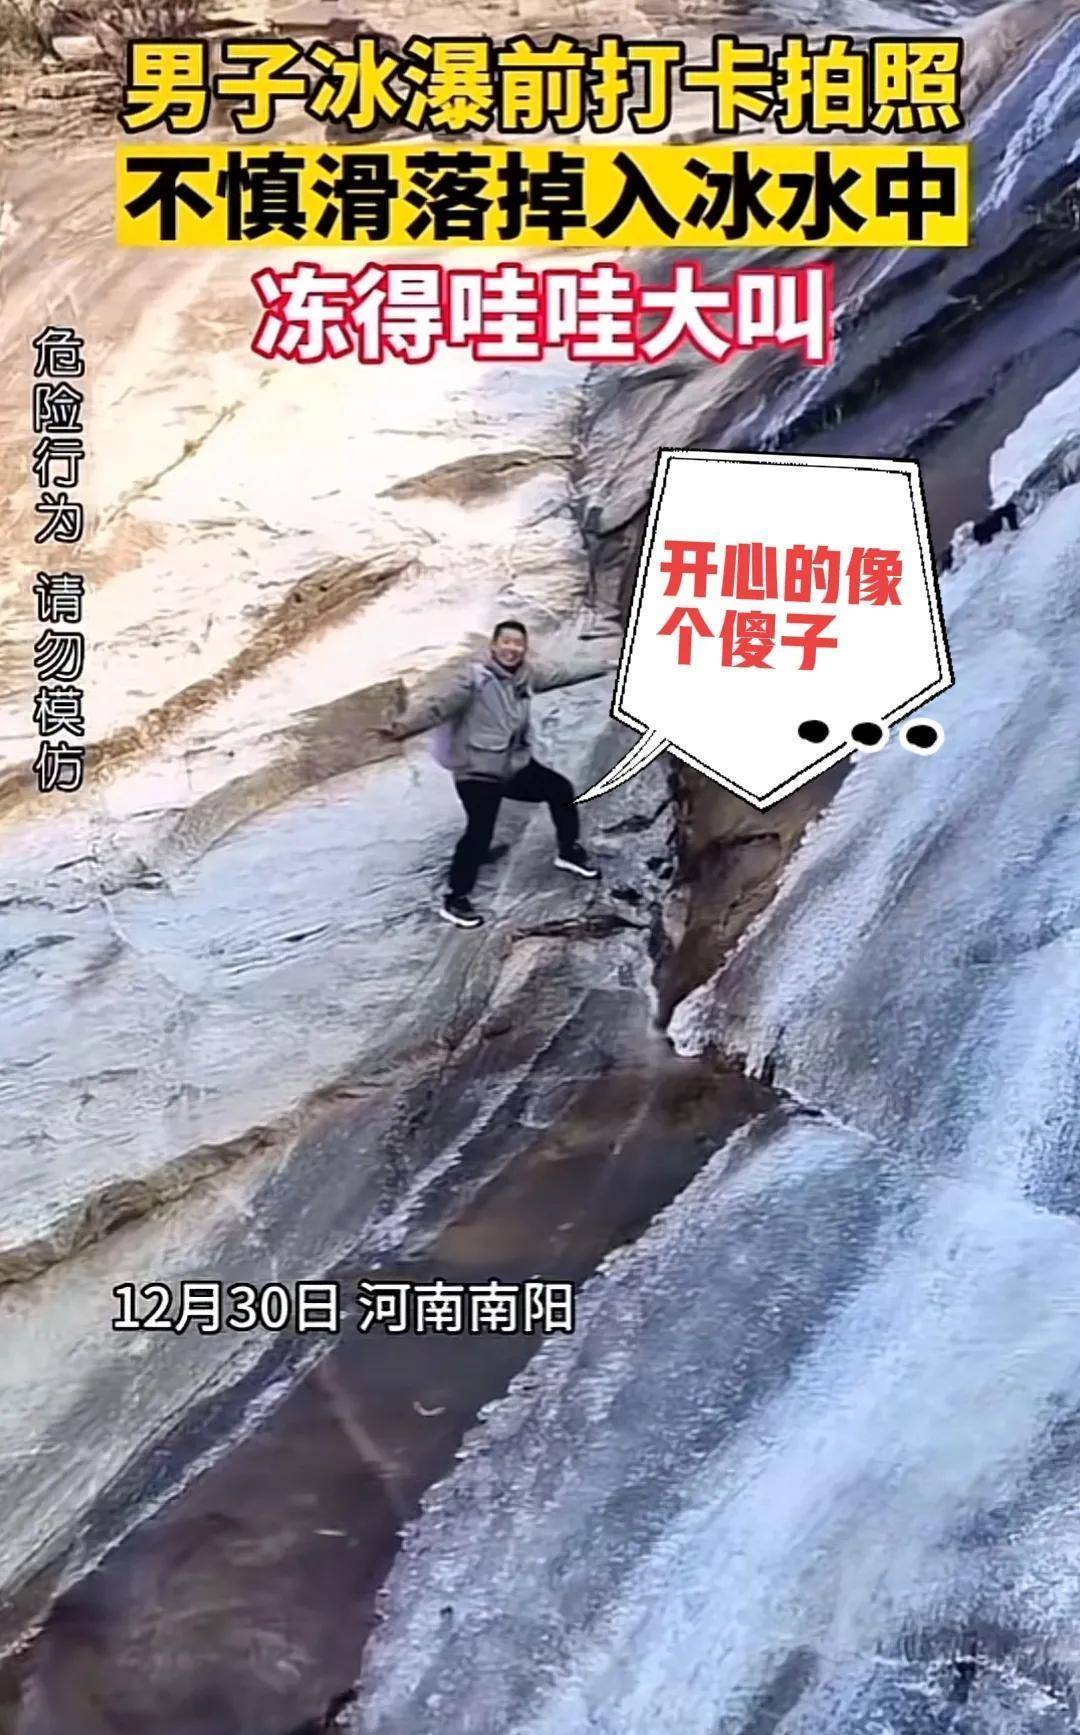 华为手机瀑布流怎么删除
:男子在冰瀑布前打卡，不慎滑落掉入冰水中，哇哇大叫的声音很治愈